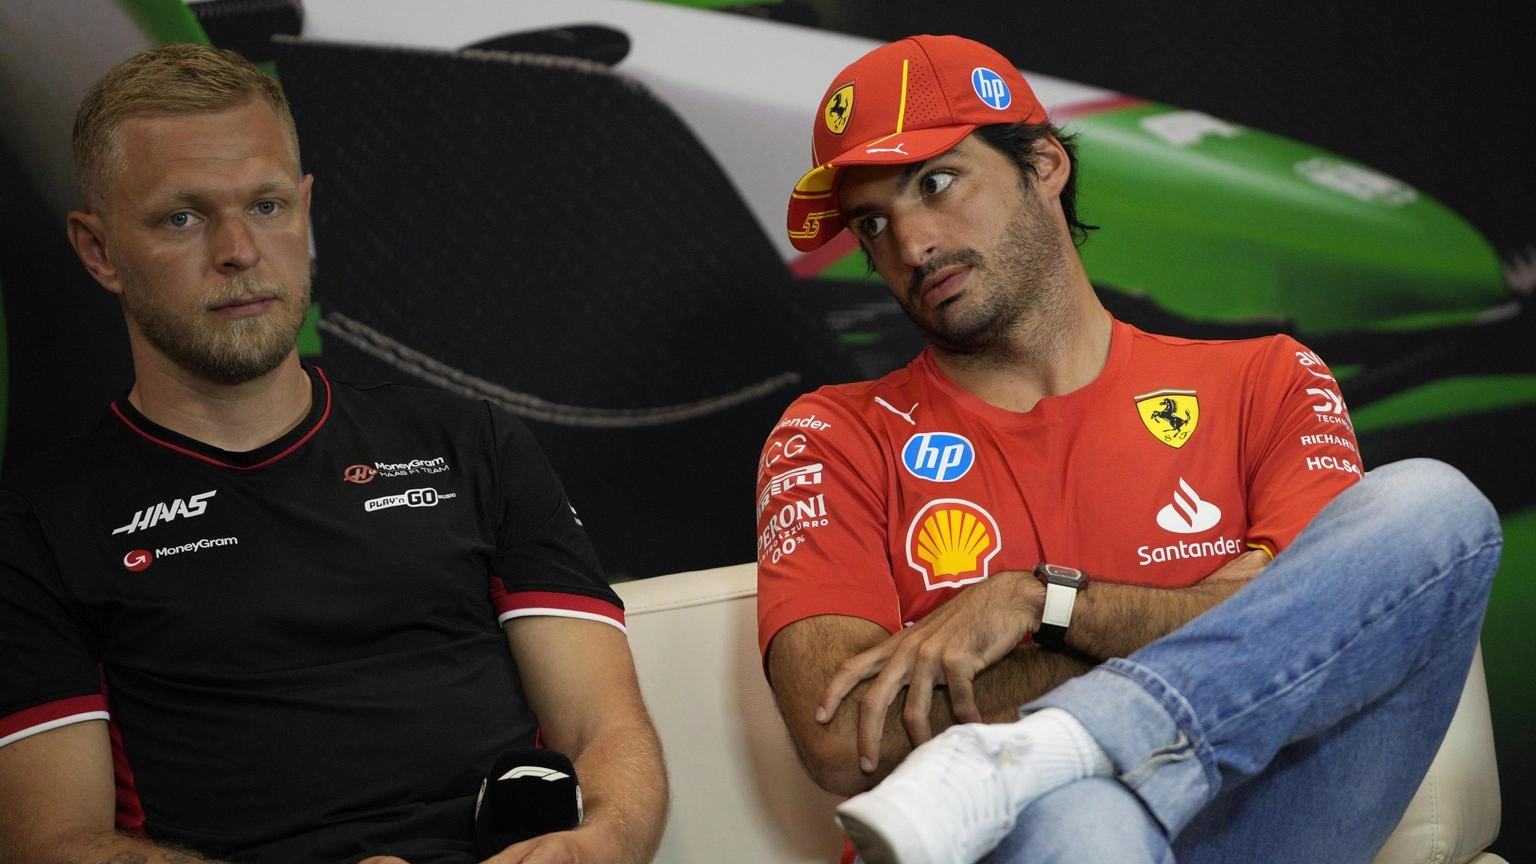 F1: Sainz, speriamo di avere un progresso questo weekend